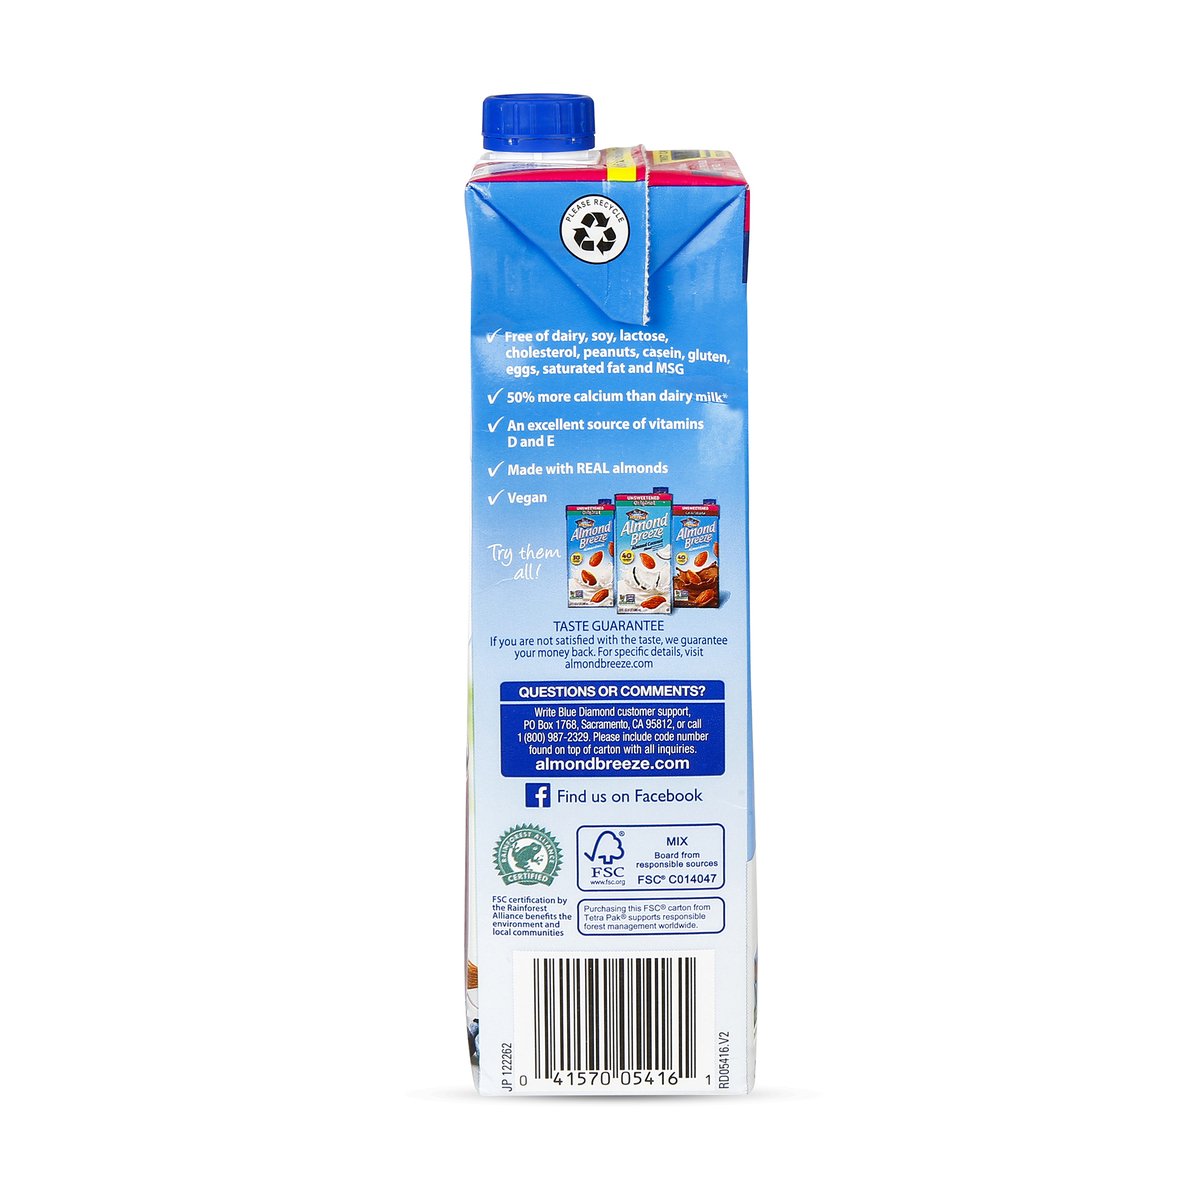 Blue Diamond Almond Milk Unsweetened Vanilla 946 ml